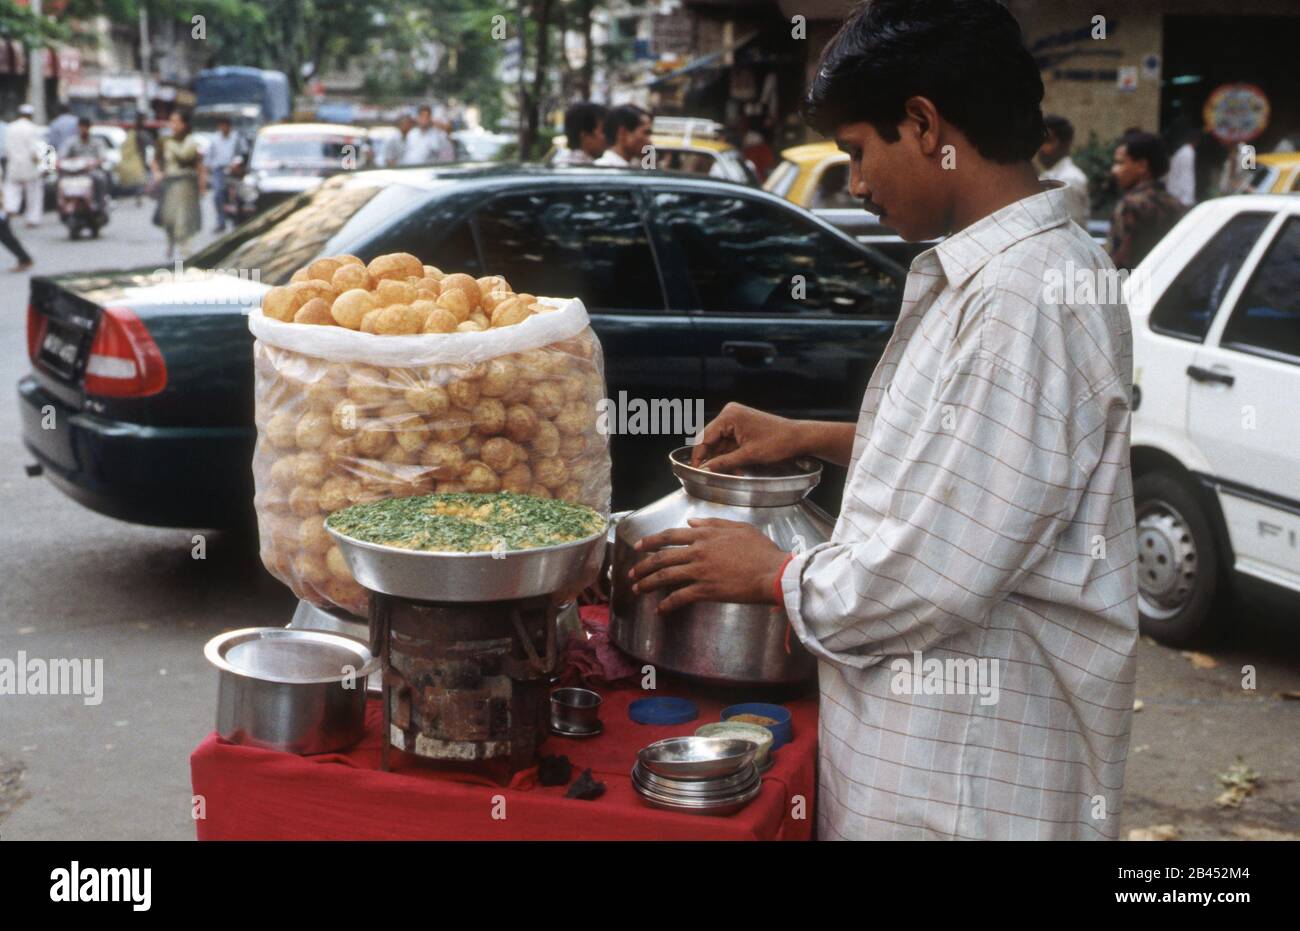 Pani puri Stall auf der Straße, Indien, Asien Stockfoto